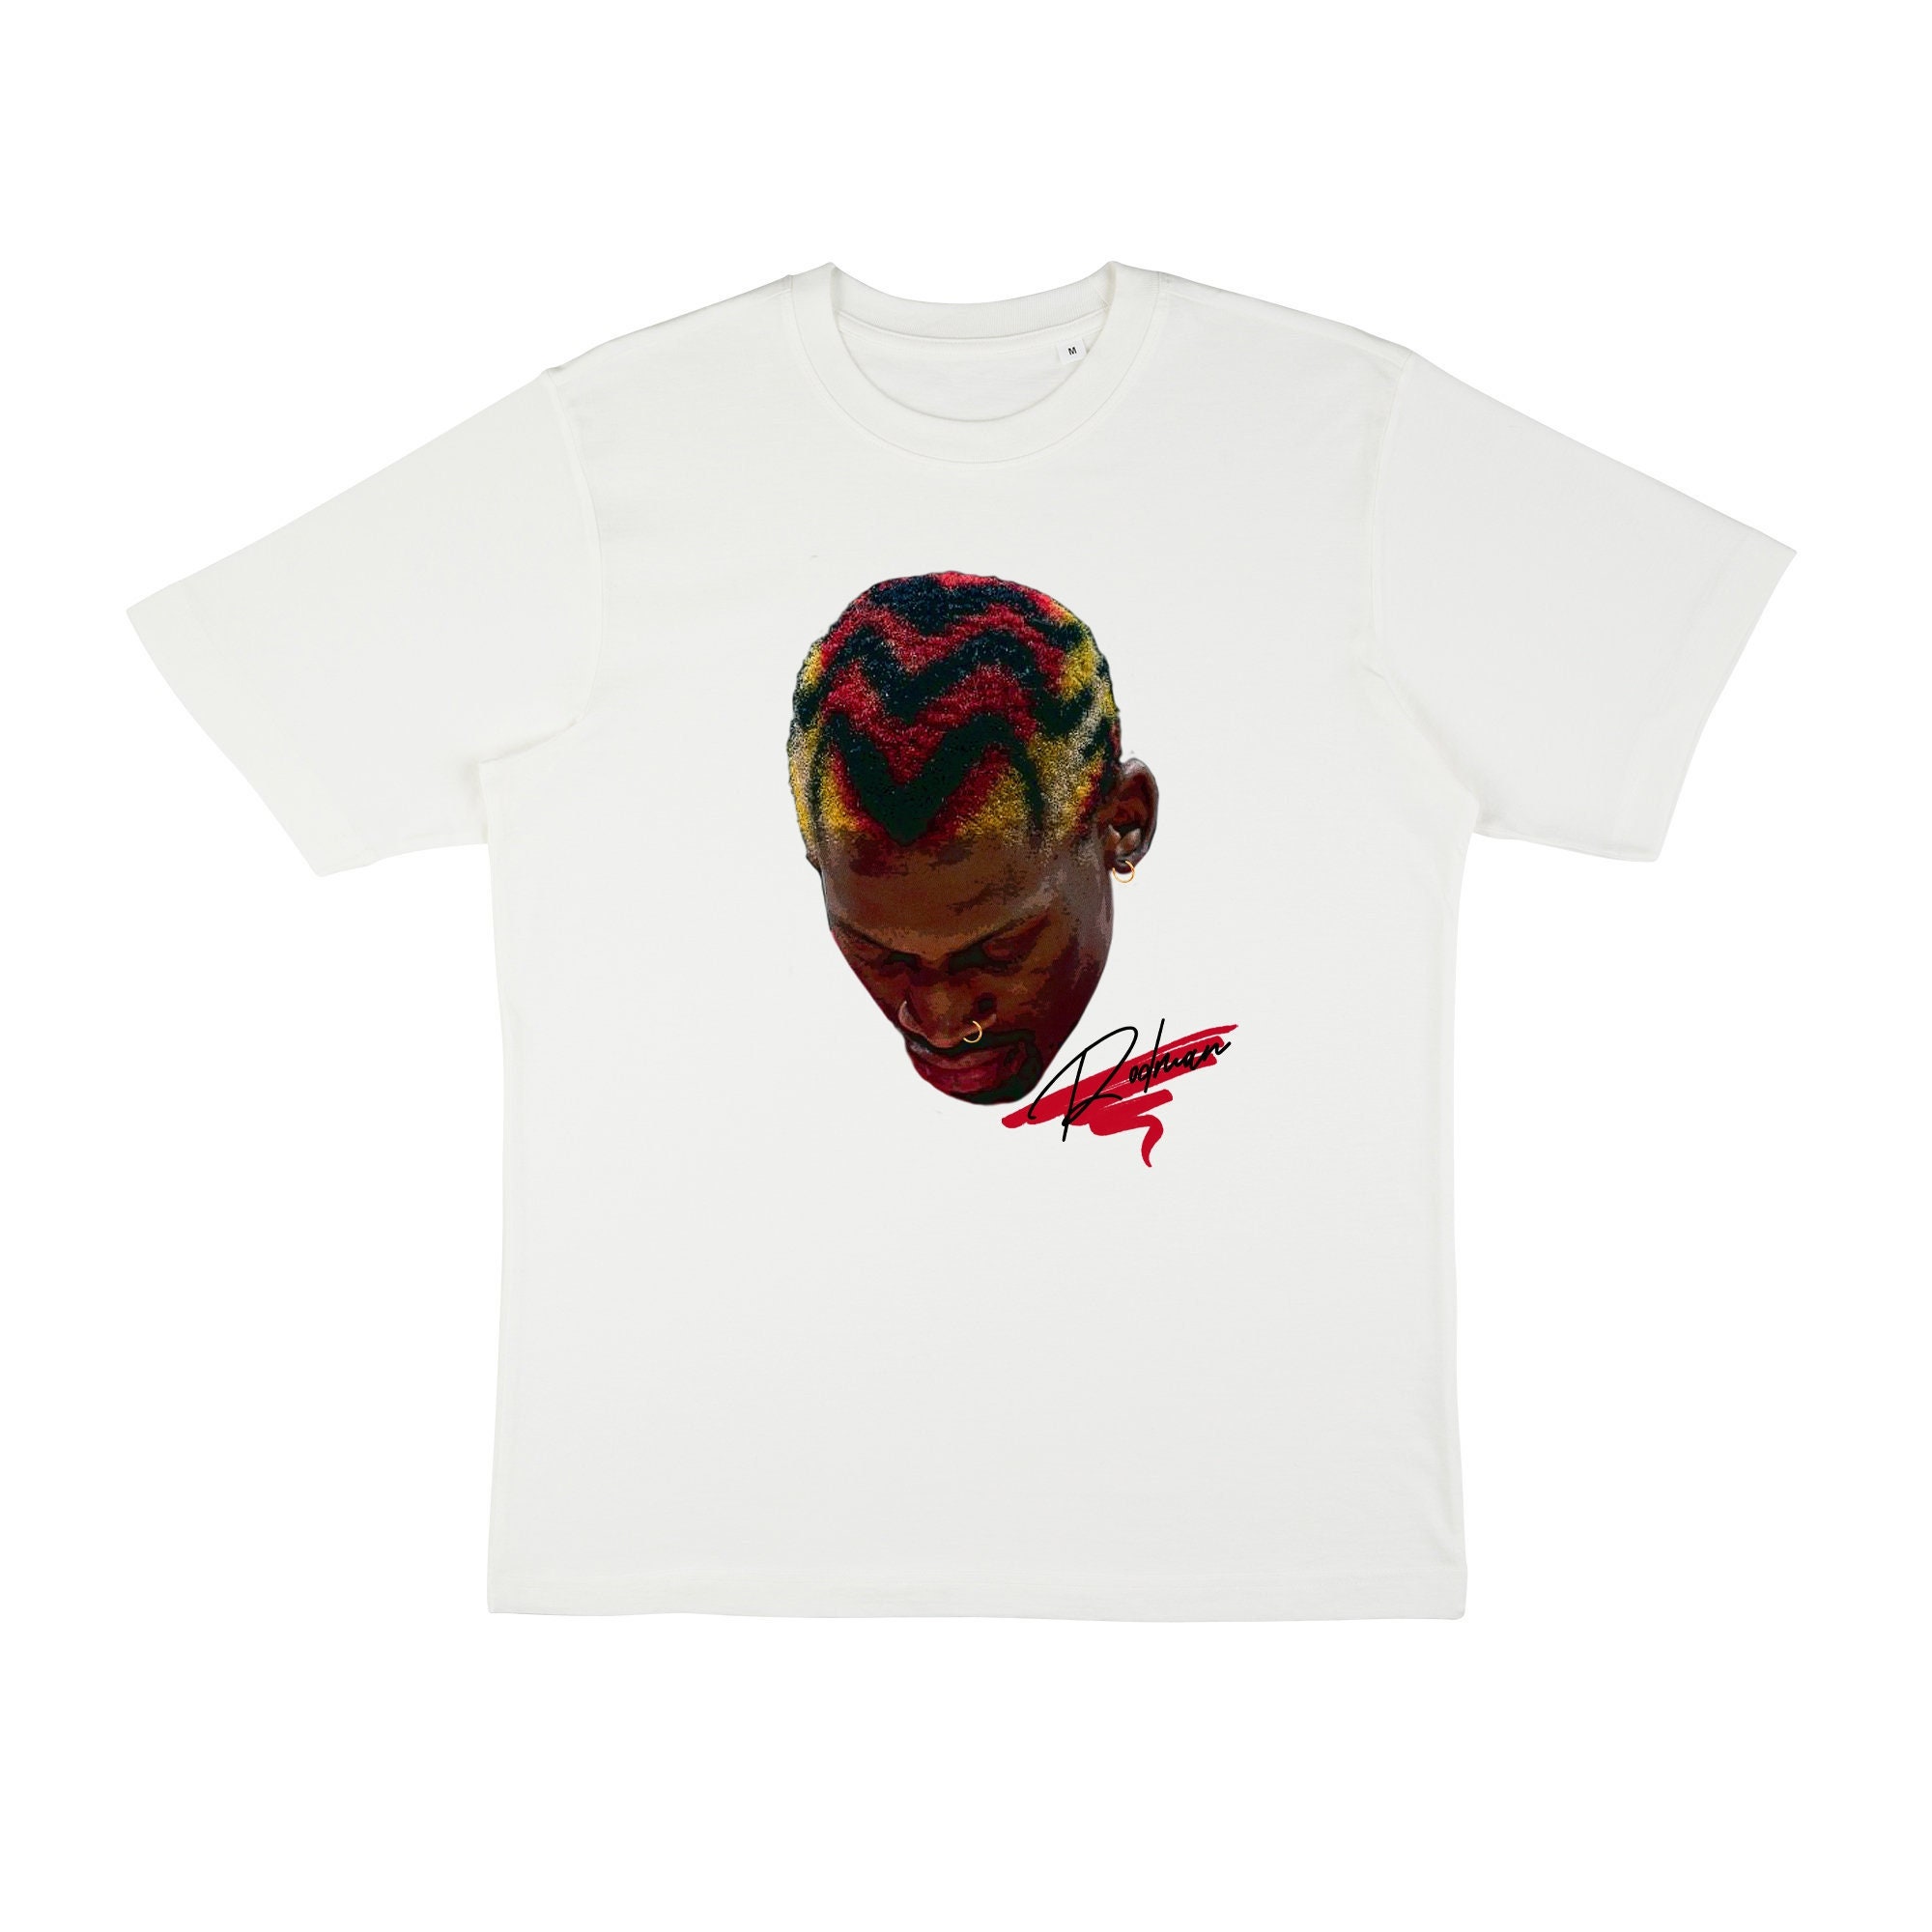 Dennis Rodman Shirt - Astroworld Travis Scott Jordan Jersey Unisex T-shirt  Crewneck